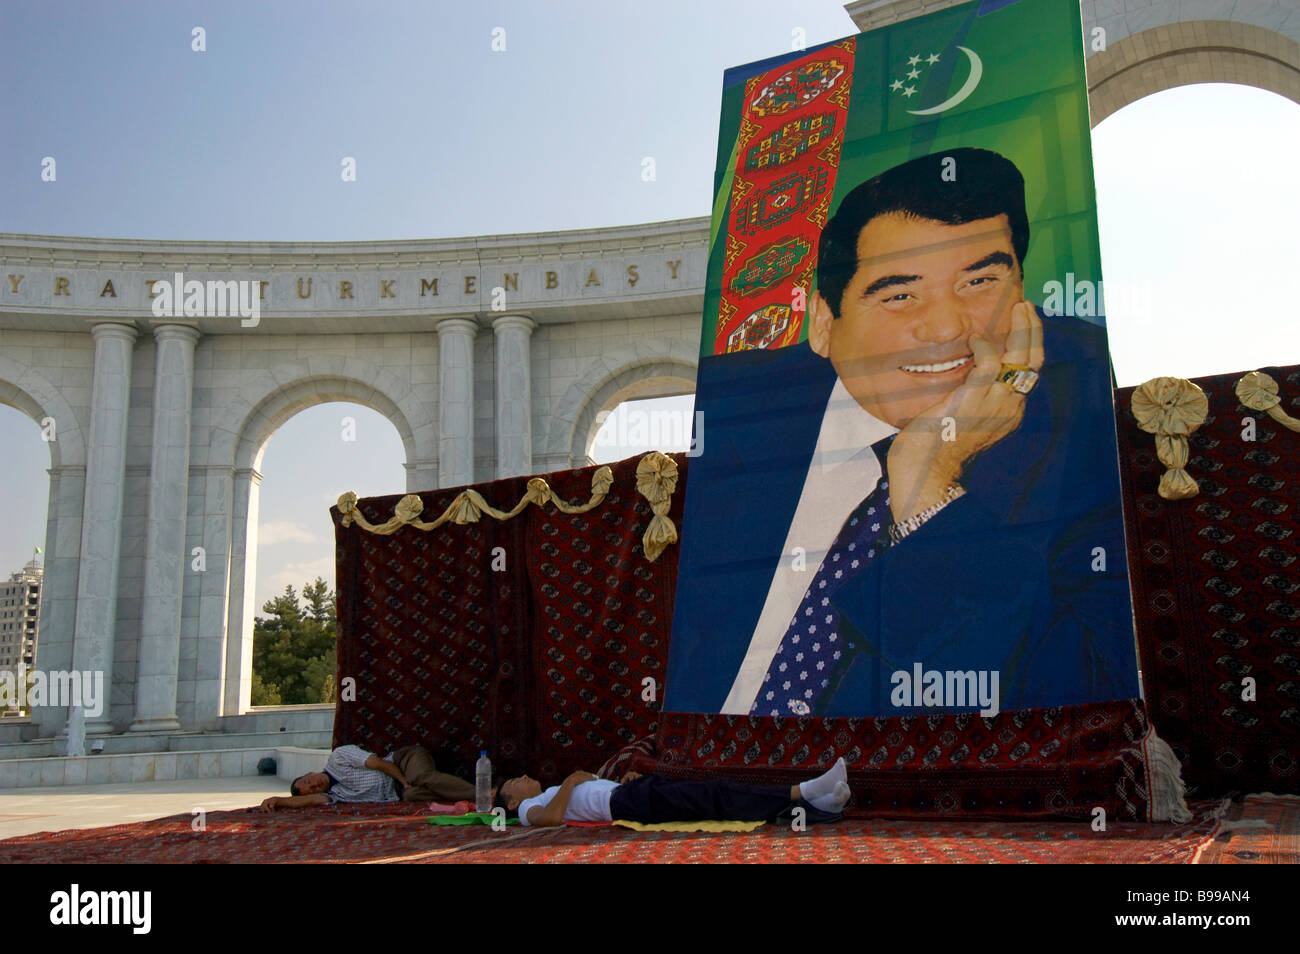 Turkmenbashy cult personality statue Turkmenbashi Stock Photo